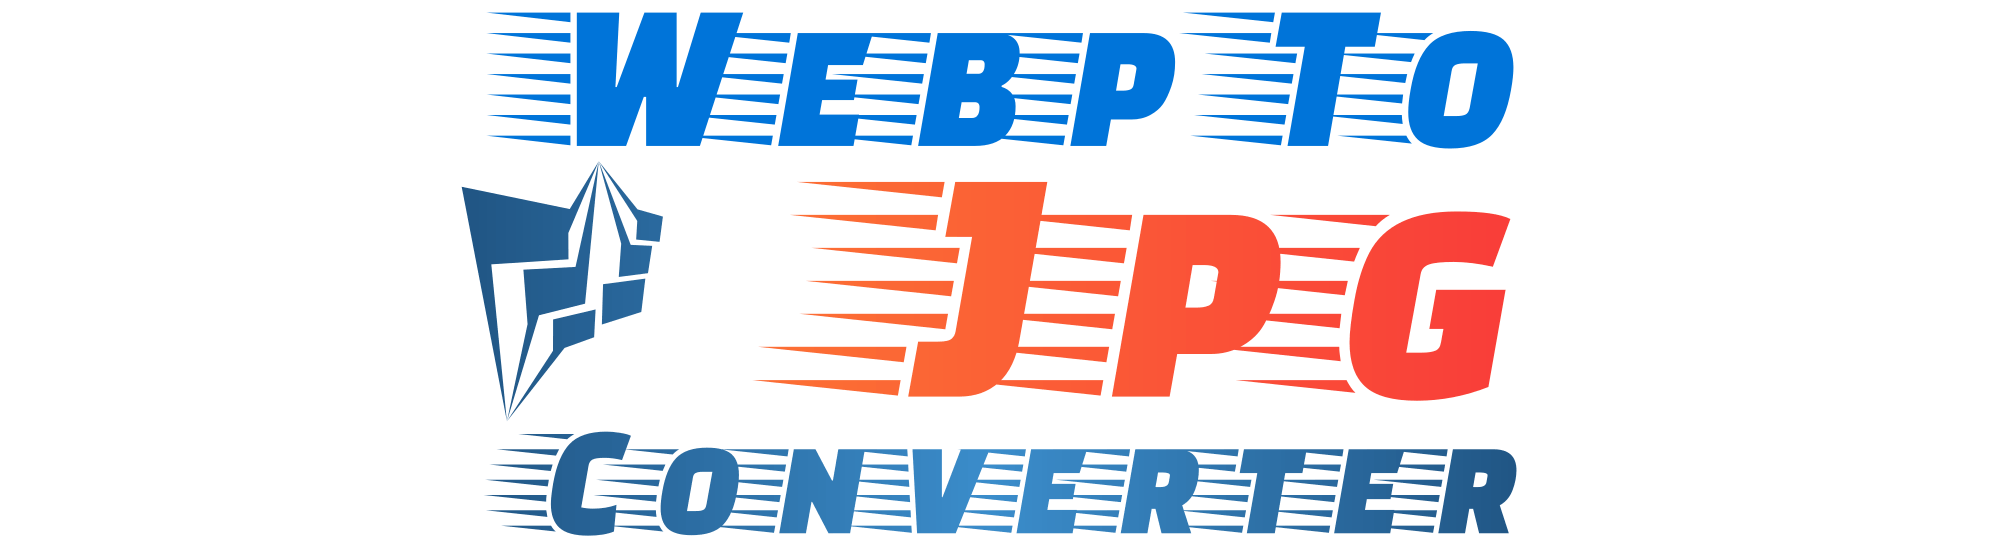 Webp-zu-JPG-Konverter